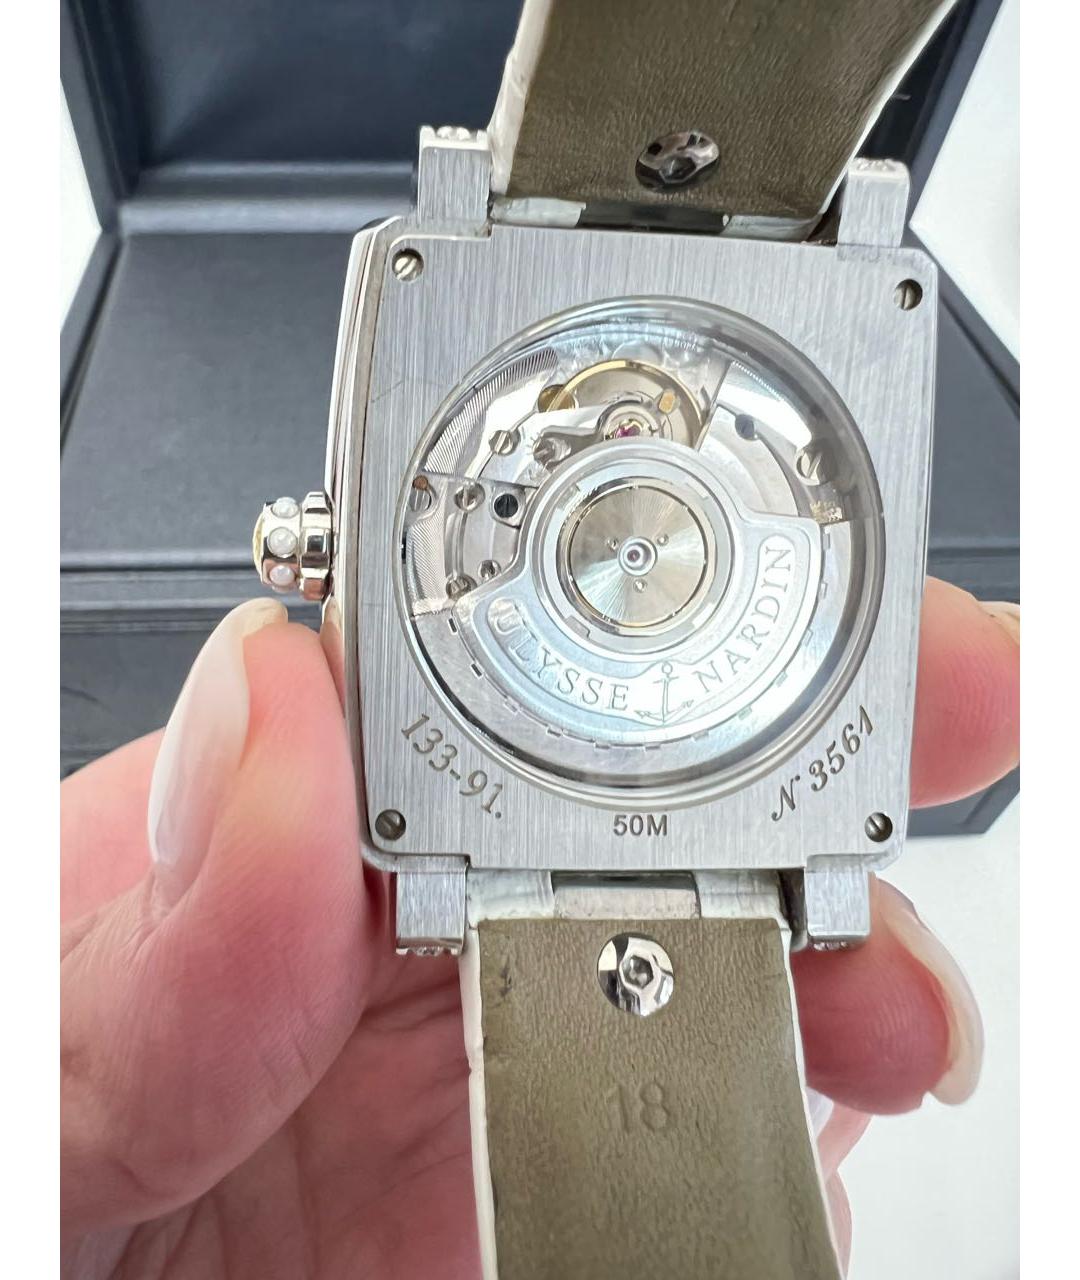 Ulysse Nardin Белые с серебряным покрытием часы, фото 2